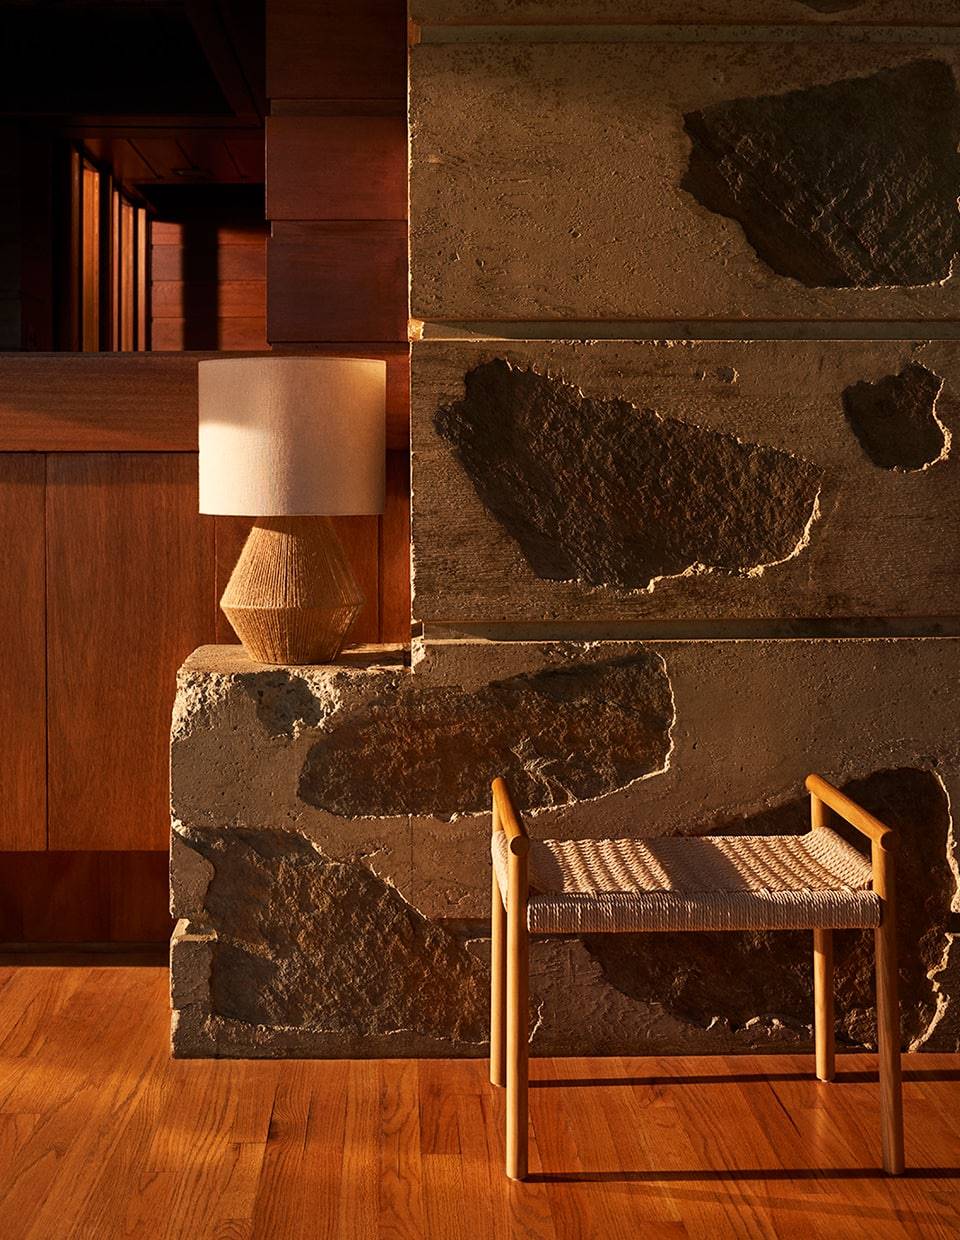 Banco de madera con asiento de papel trenzado de la colección primavera 2020 de Zara Home